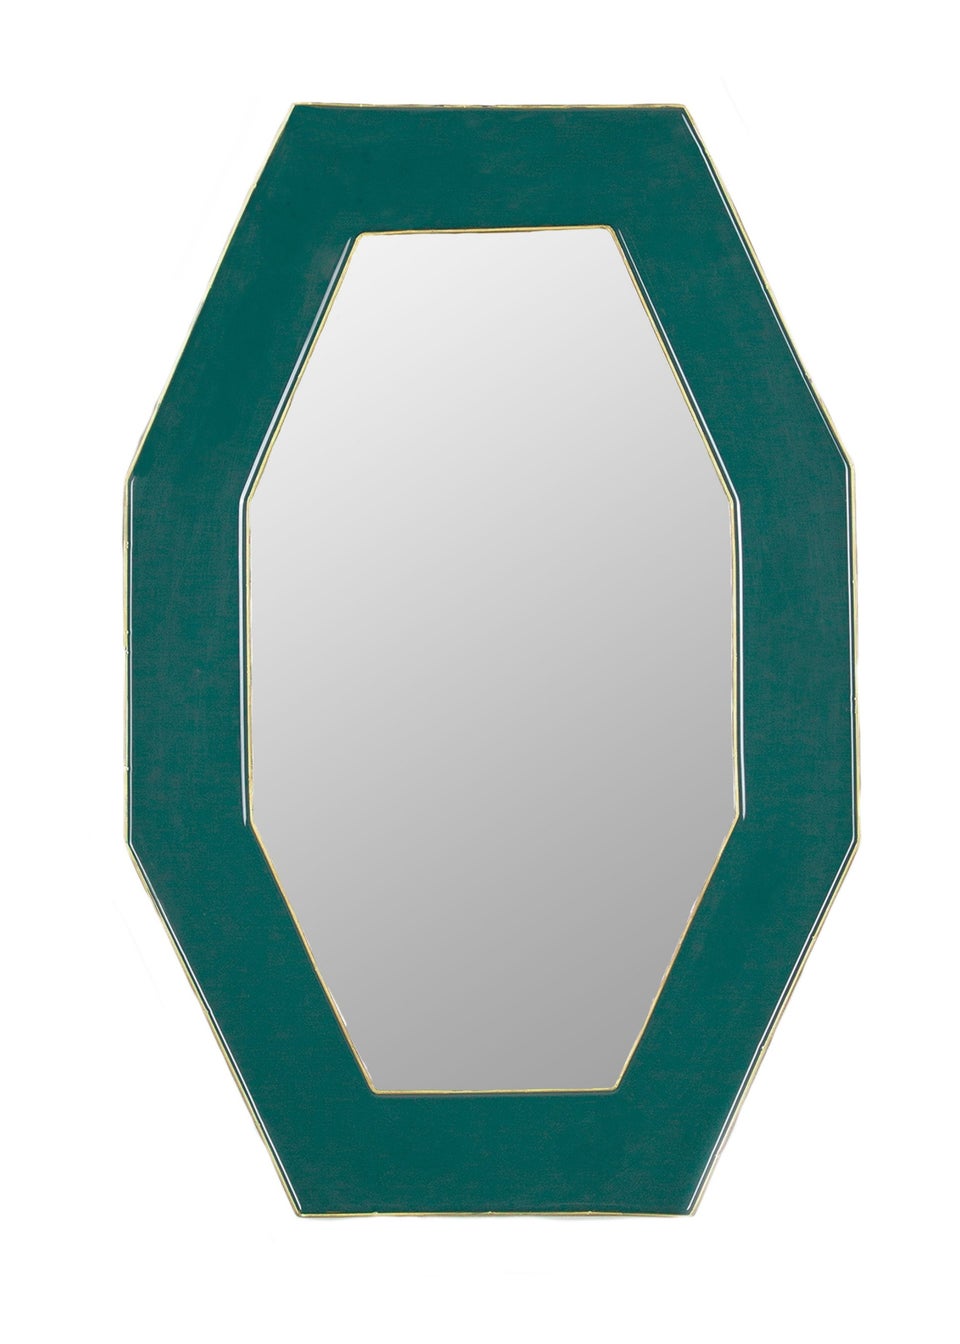 Paoletti Framed Octagonal Wall Mirror (39 x 59 x 2cm)